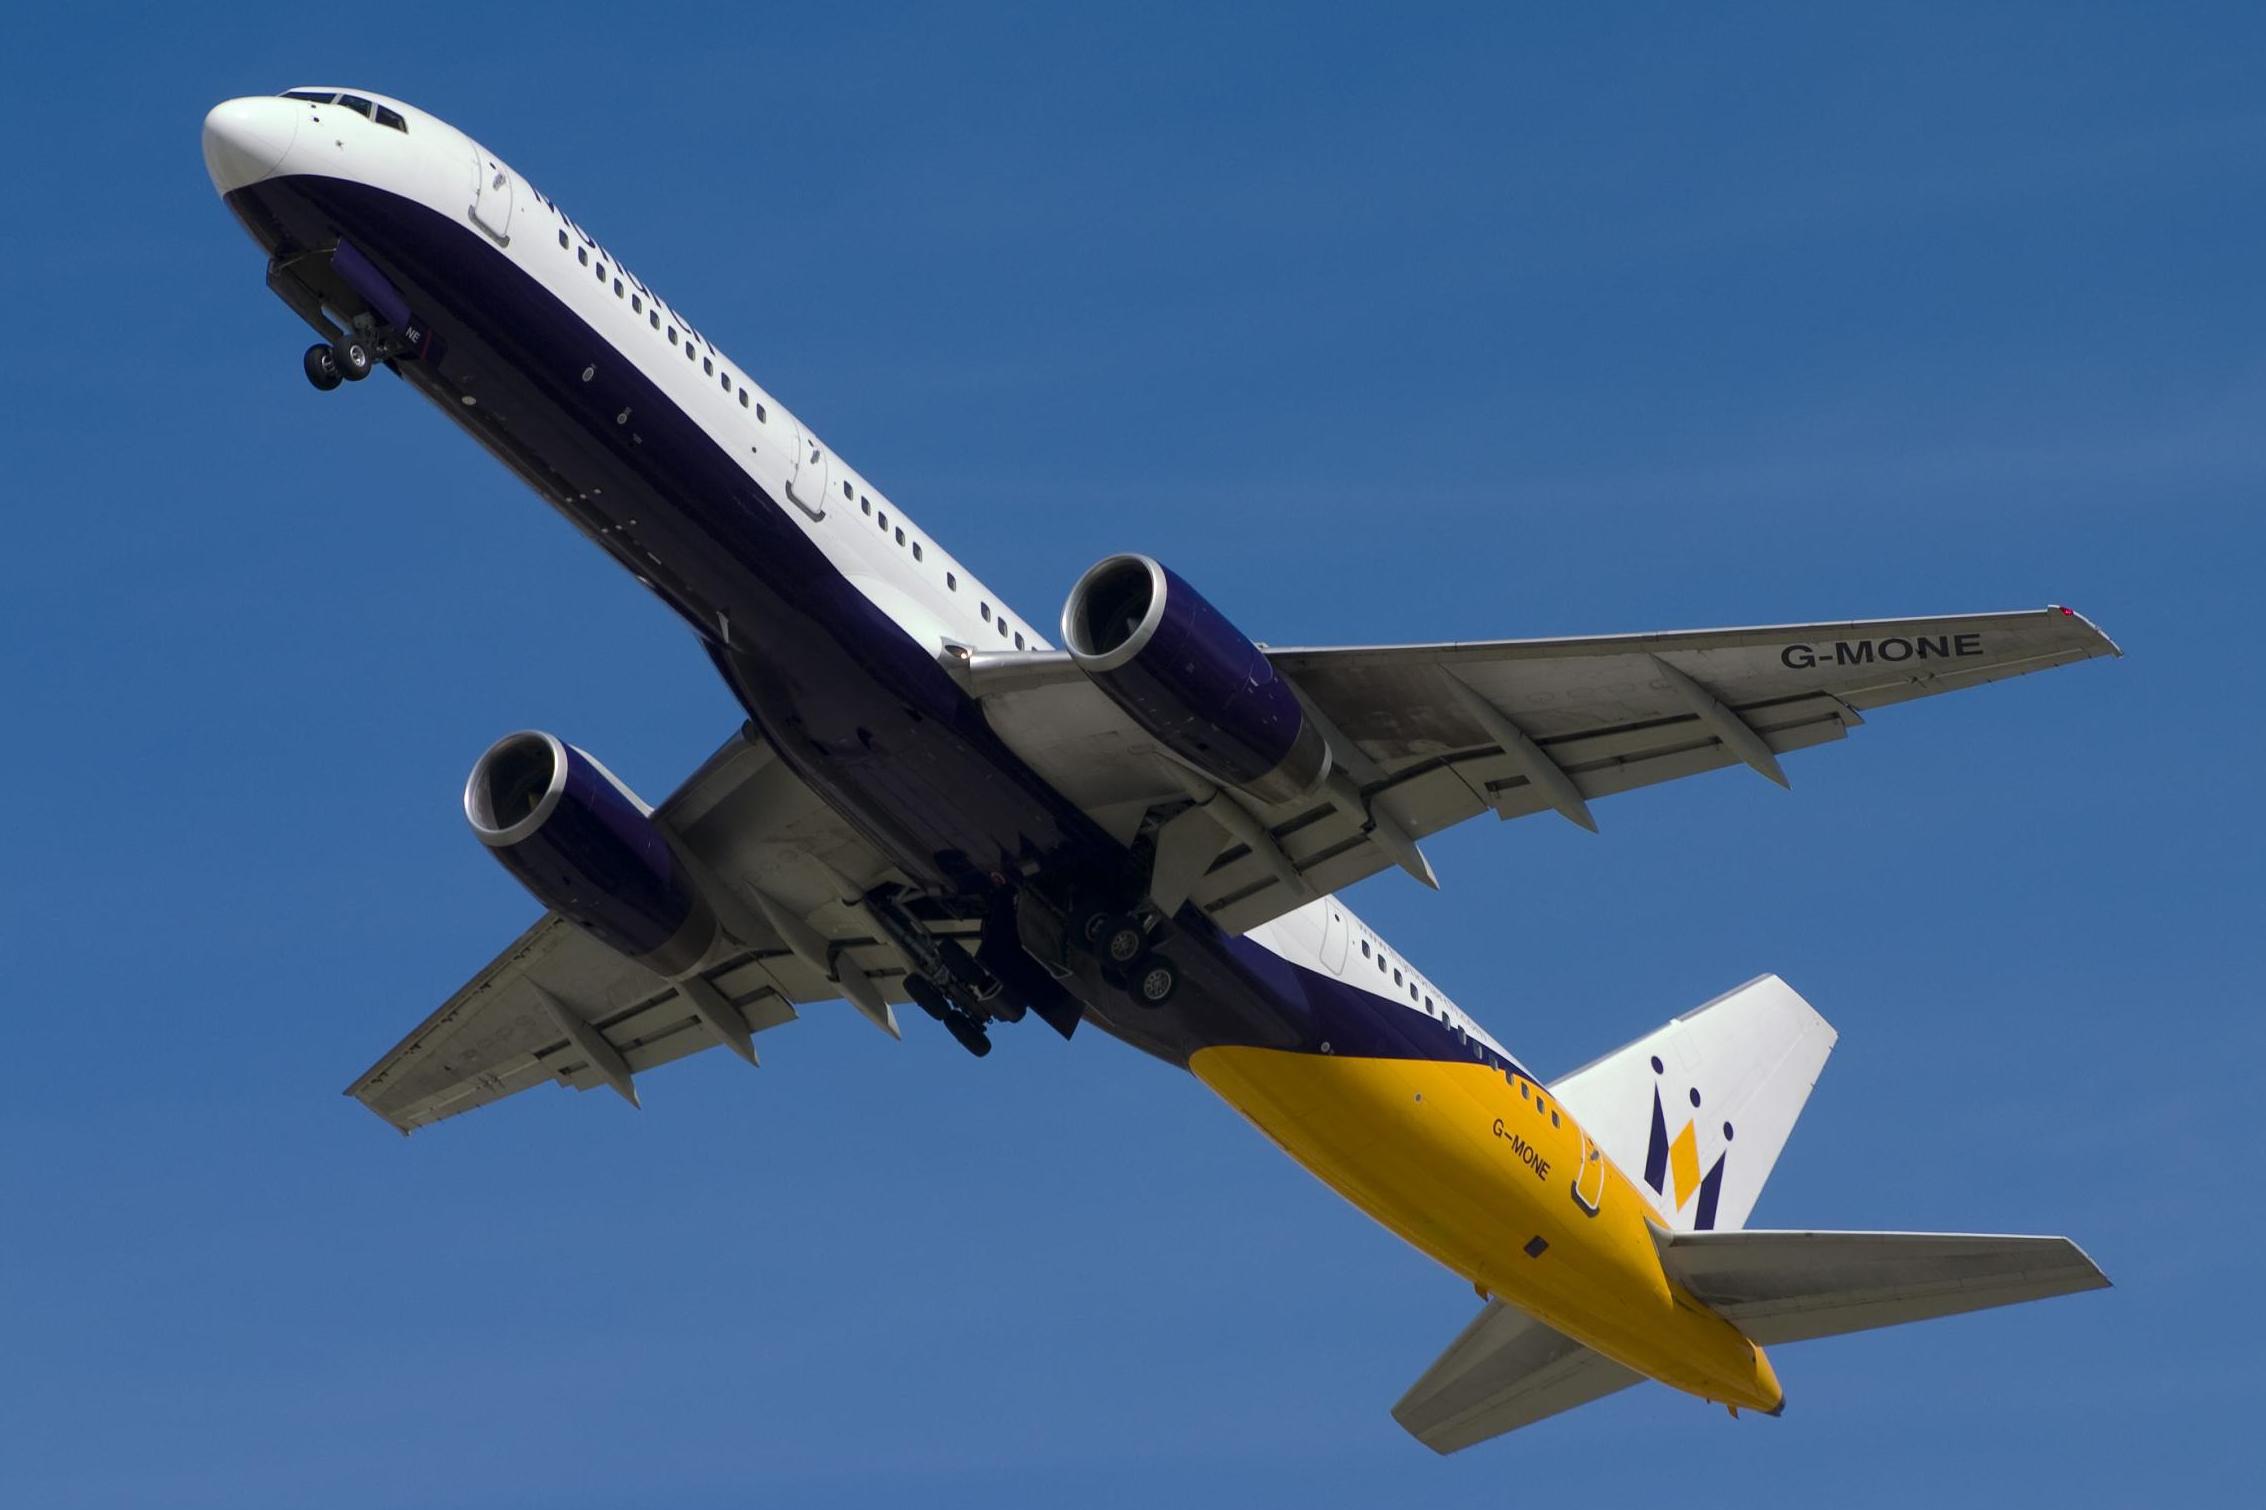 Una dintre cele mai mari companii aeriene din Europa a depus cererea pentru insolvenţă. Peste 100.000 de turişti sunt blocaţi în străinătate